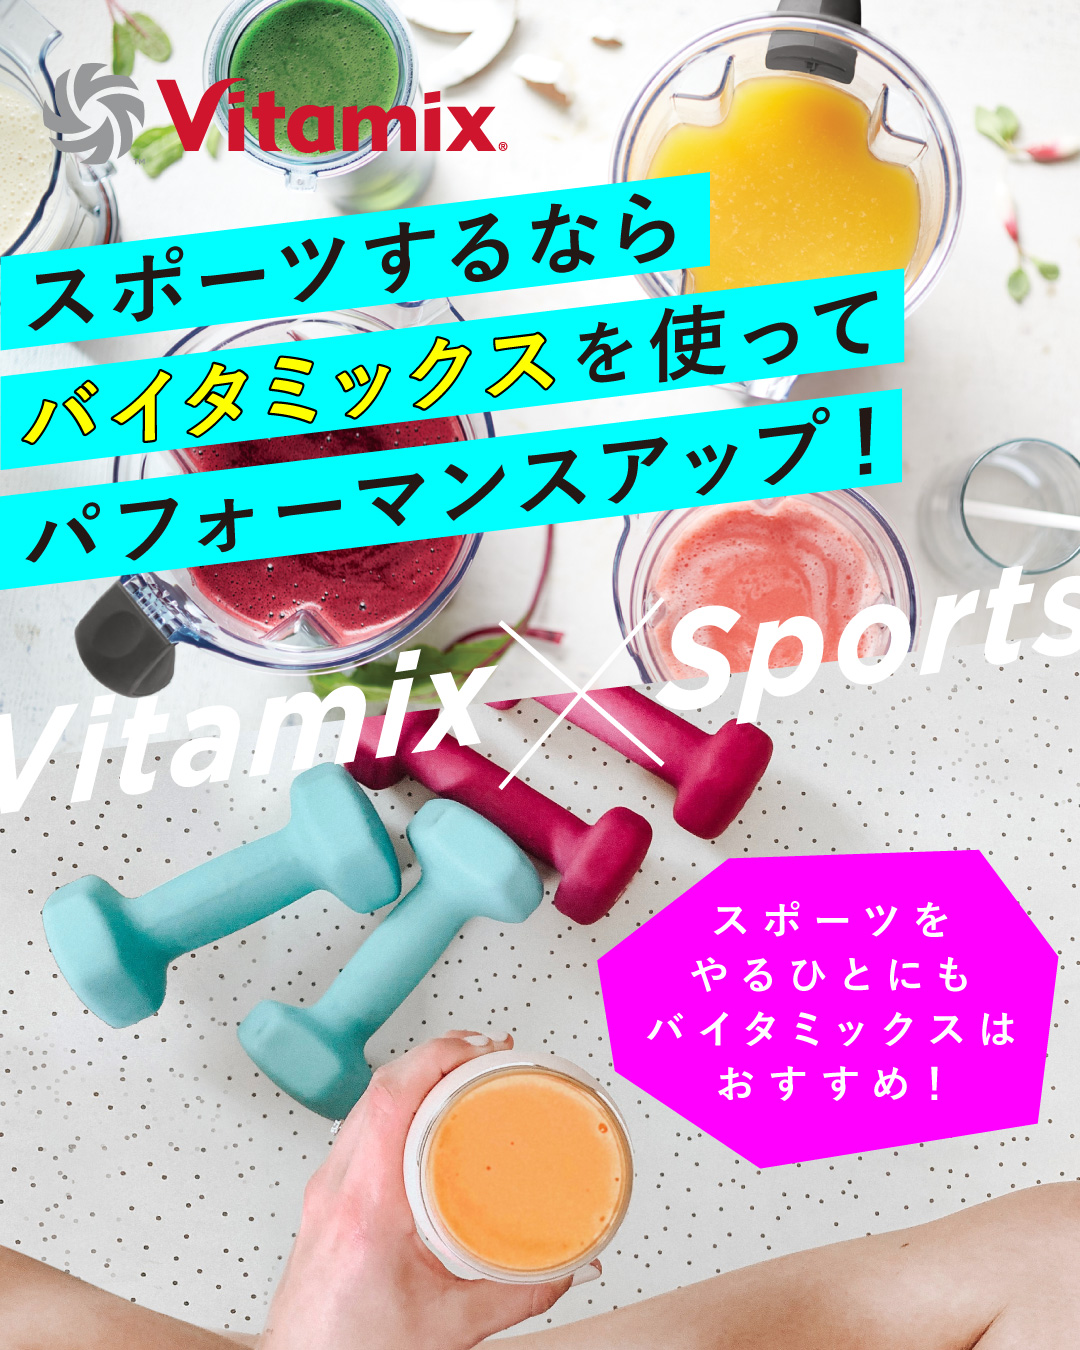 バイタミックス Vitamix Sports スポーツするならバイタミックスを使ってパフォーマンスアップ スムージー 体づくり エネルギー源 疲労回復効果のある栄養素を補給  栄養士のおすすめスポーツ前スムージー 効率よく栄養補給